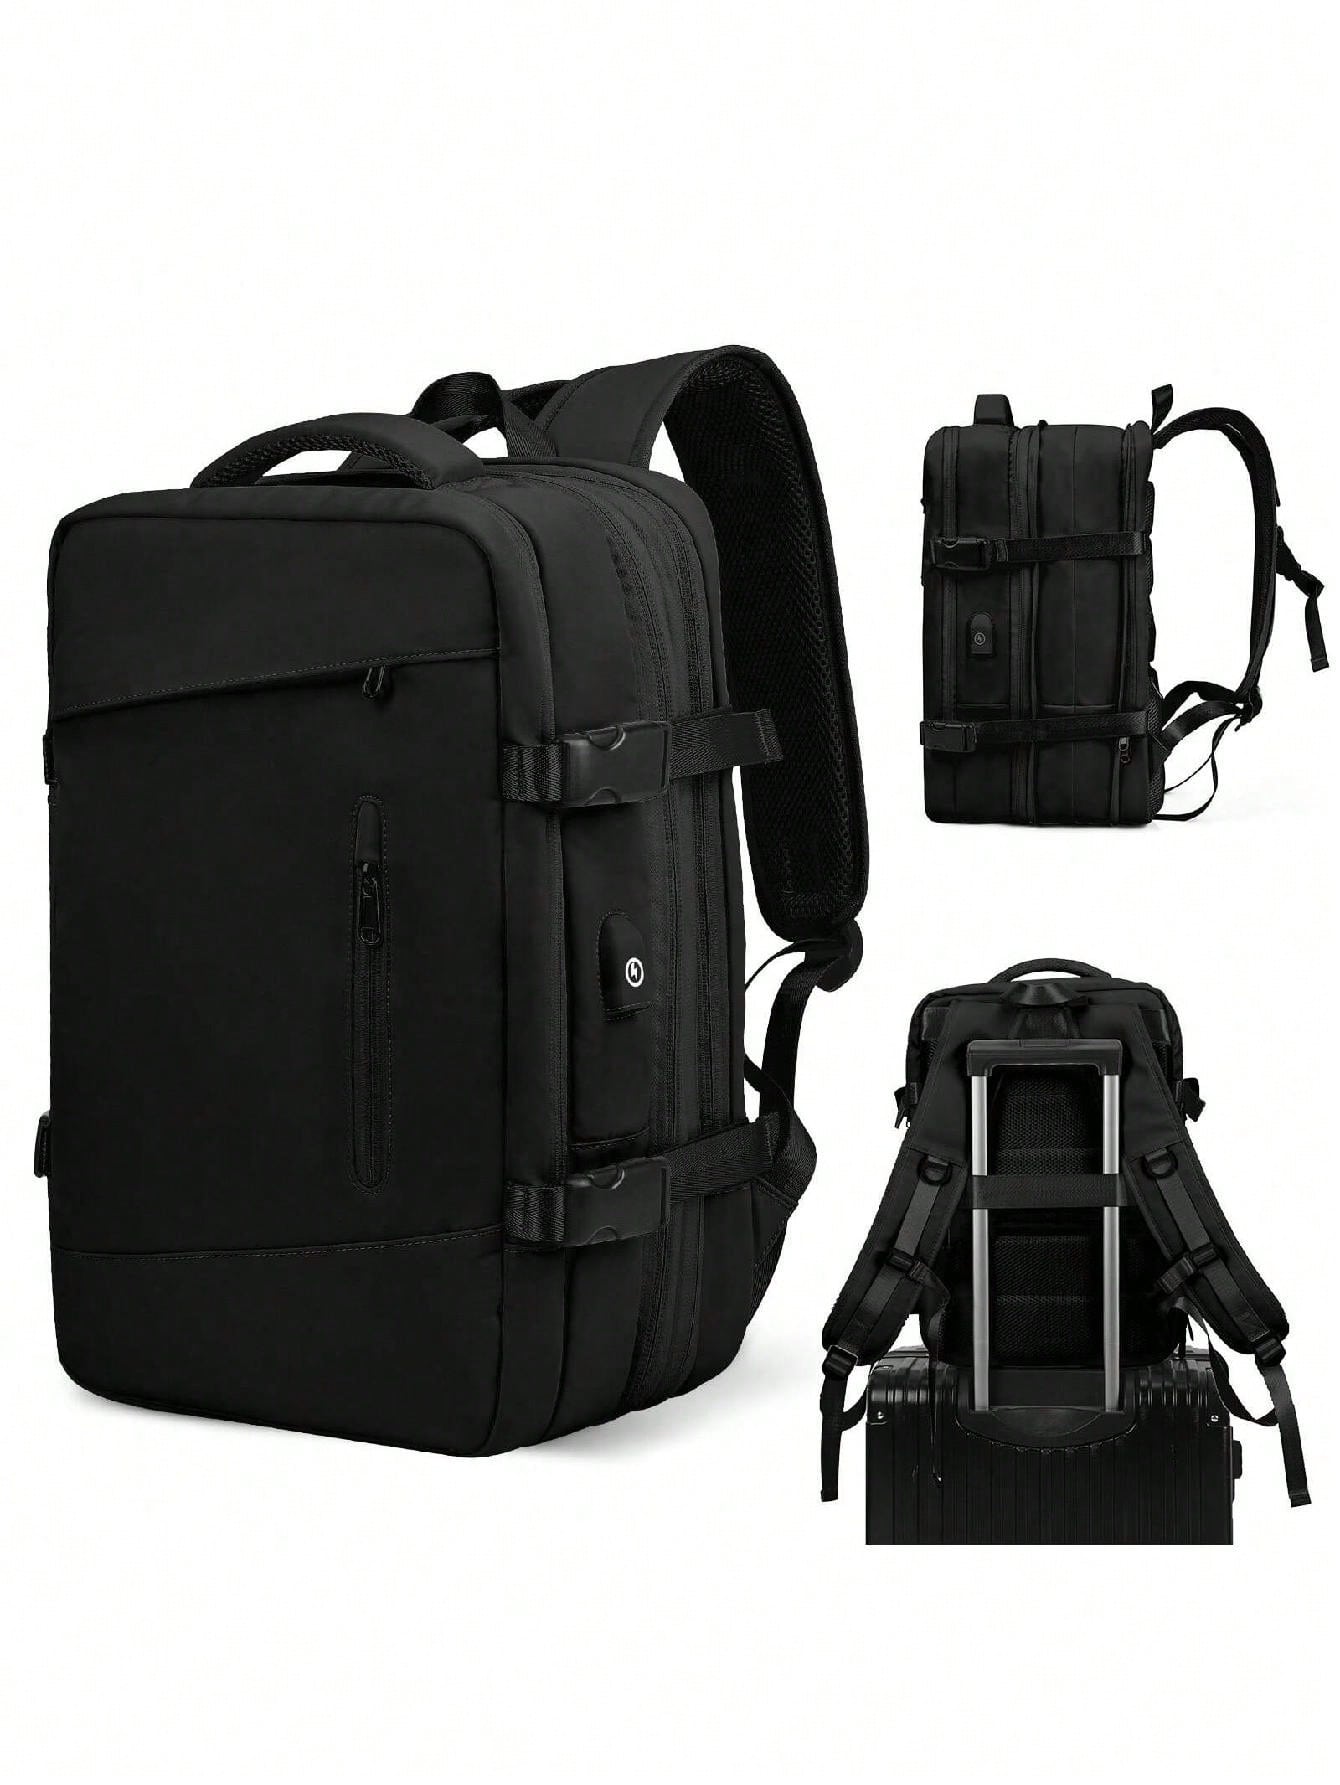 Мужской рюкзак с расширяемой вместимостью для деловых поездок, серый женский дорожный рюкзак большой вместимости черный